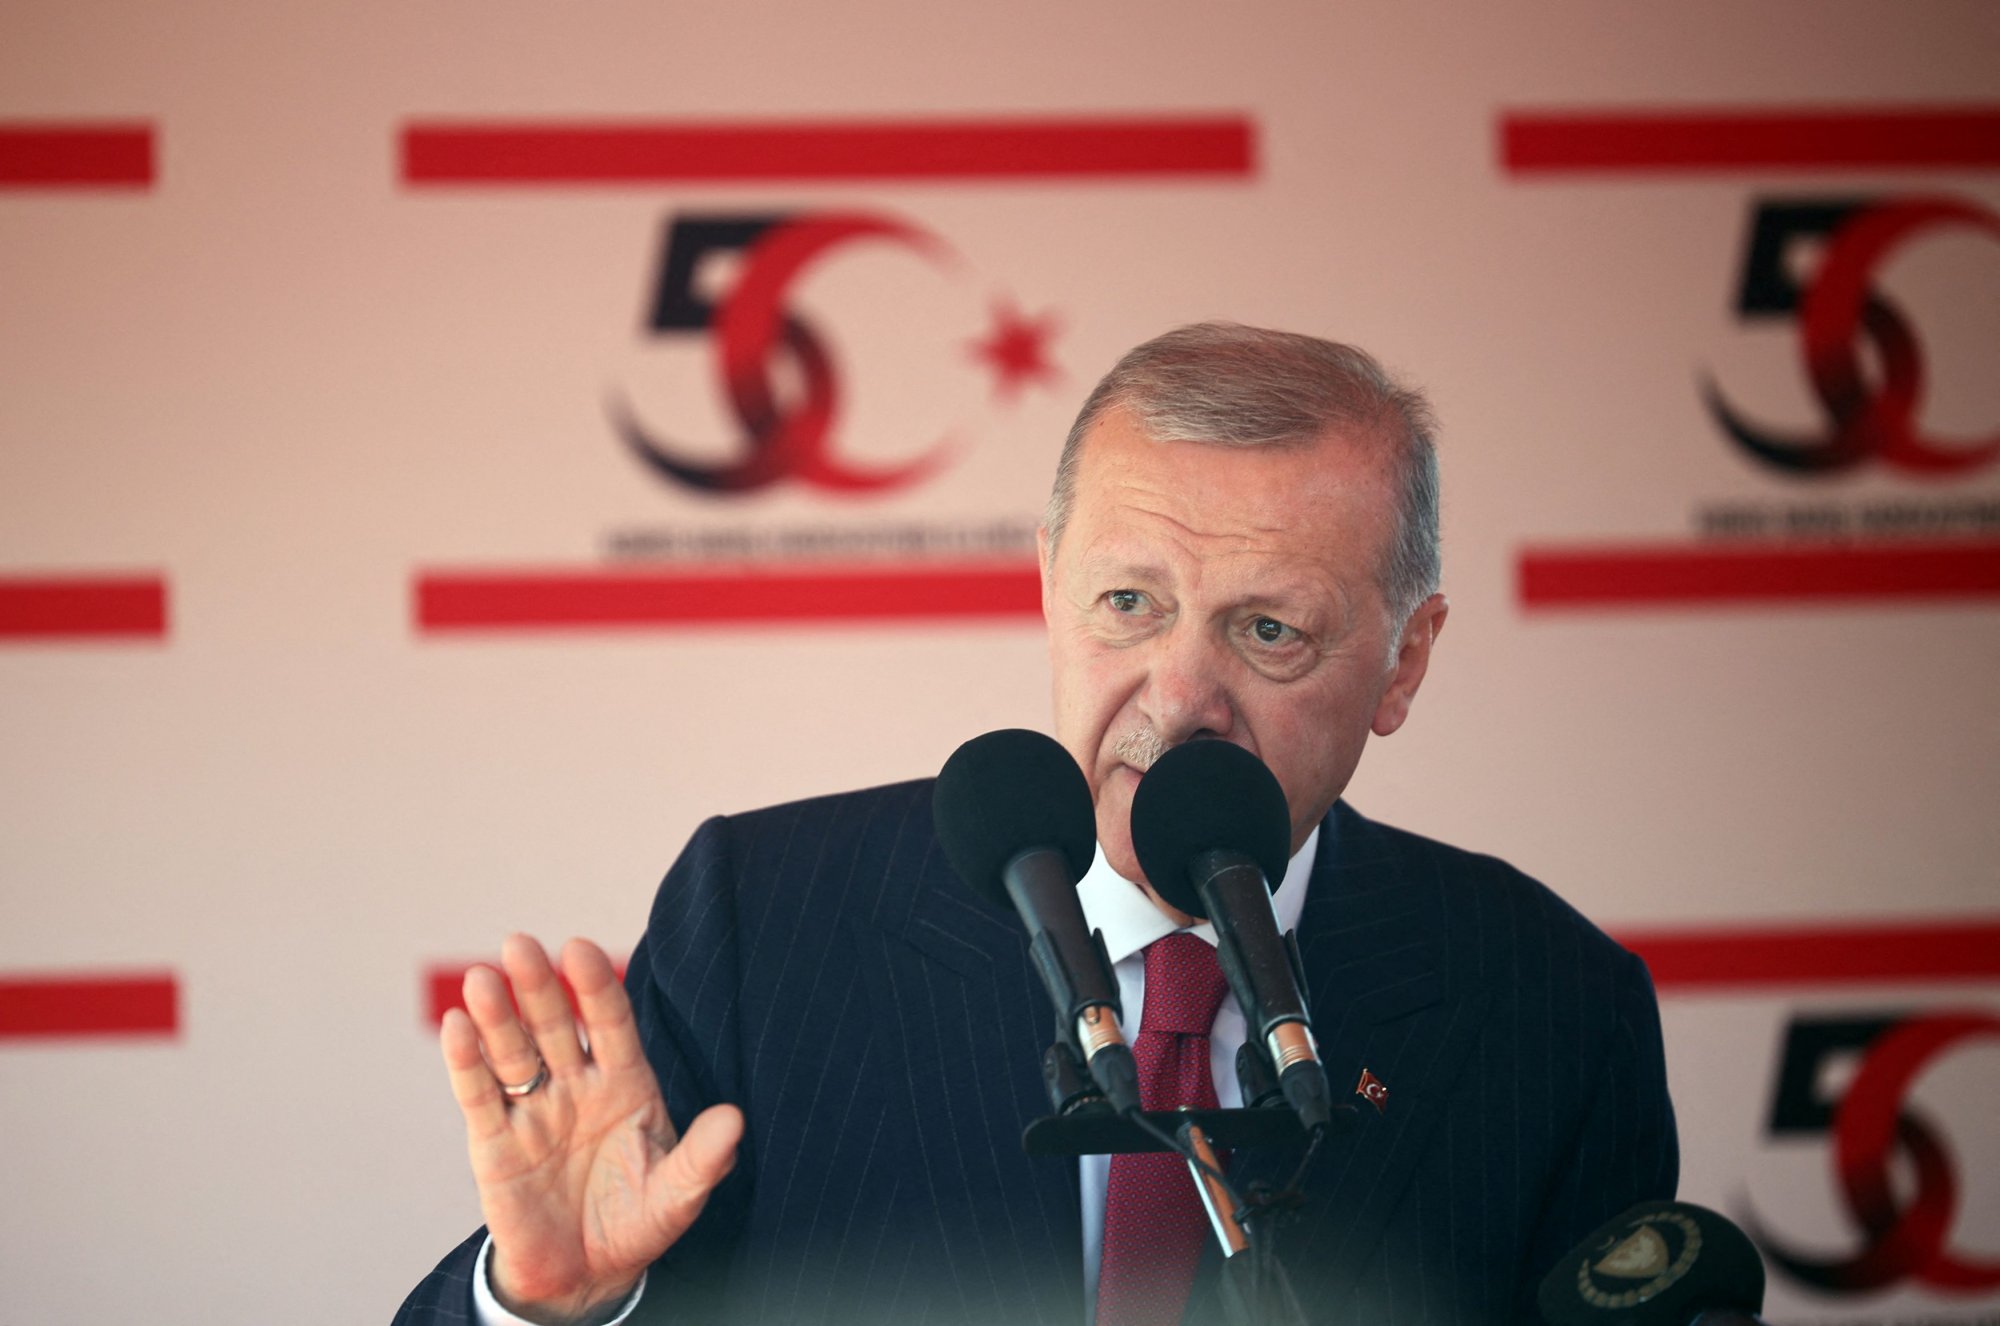 ΣΥΡΙΖΑ: Η Τουρκία αρνείται να εγκαταλείψει τα νεό-οθωμανικά της αφηγήματα